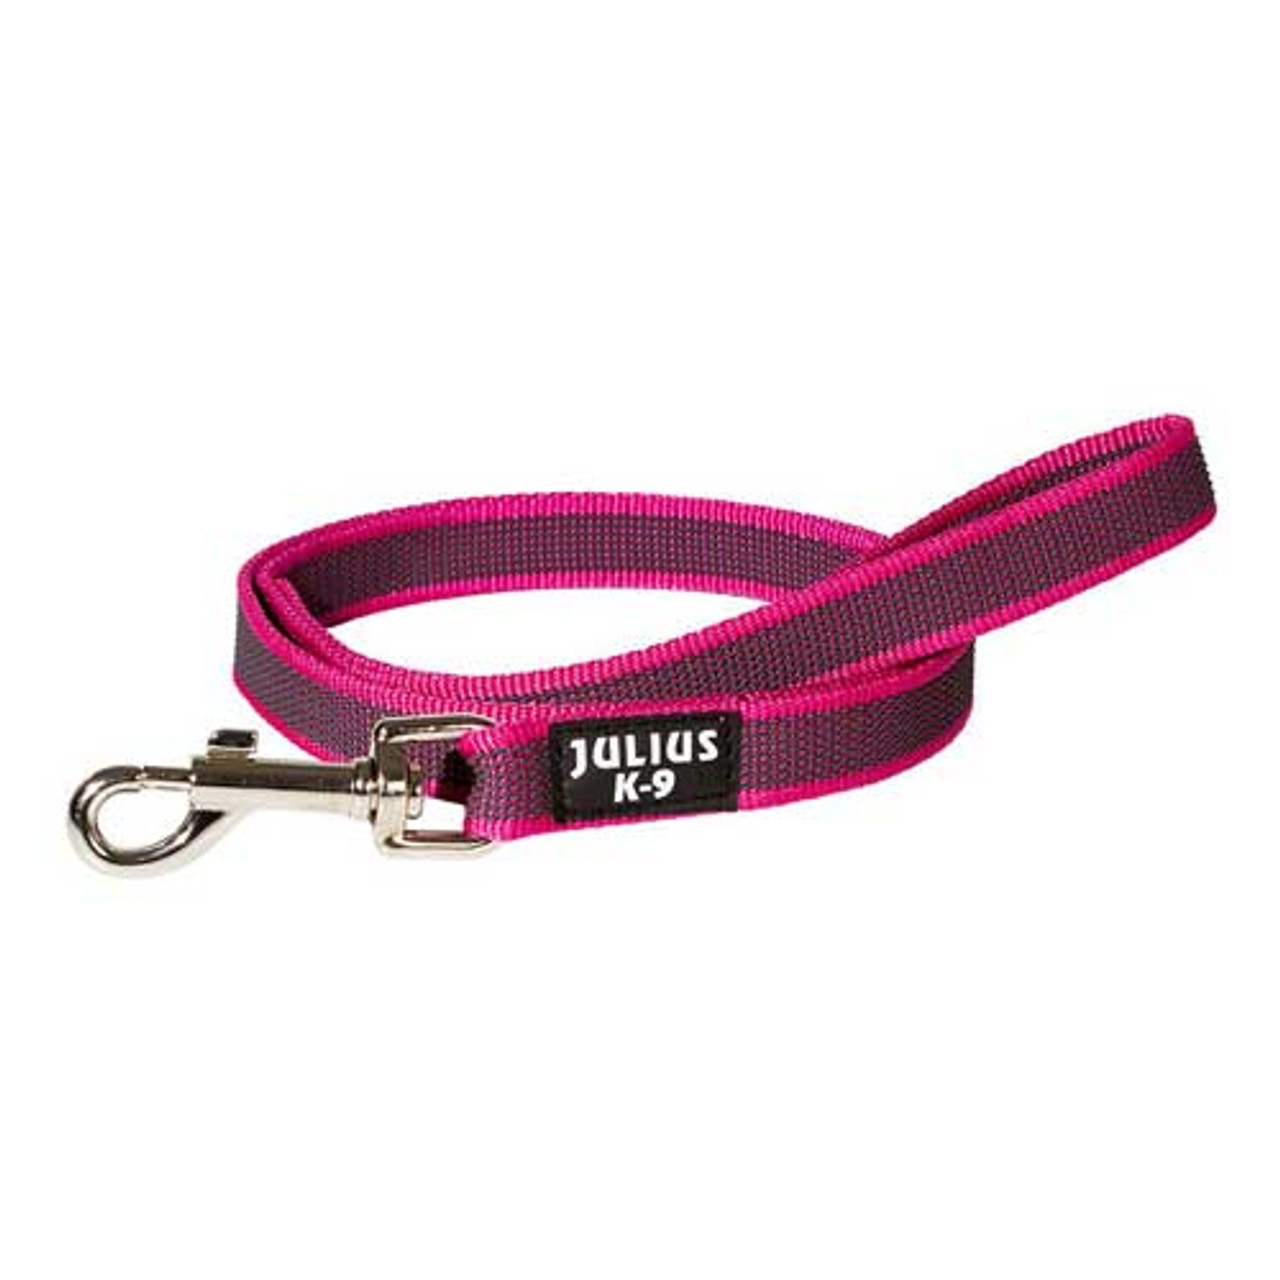 Julius-K9 Color & Grey Super-Grip Leash Pink-Grey Width (0.7"/ 20mm) Length (3ft / 1 m) With Handle, Max for 110lb/ 50 kg Dog